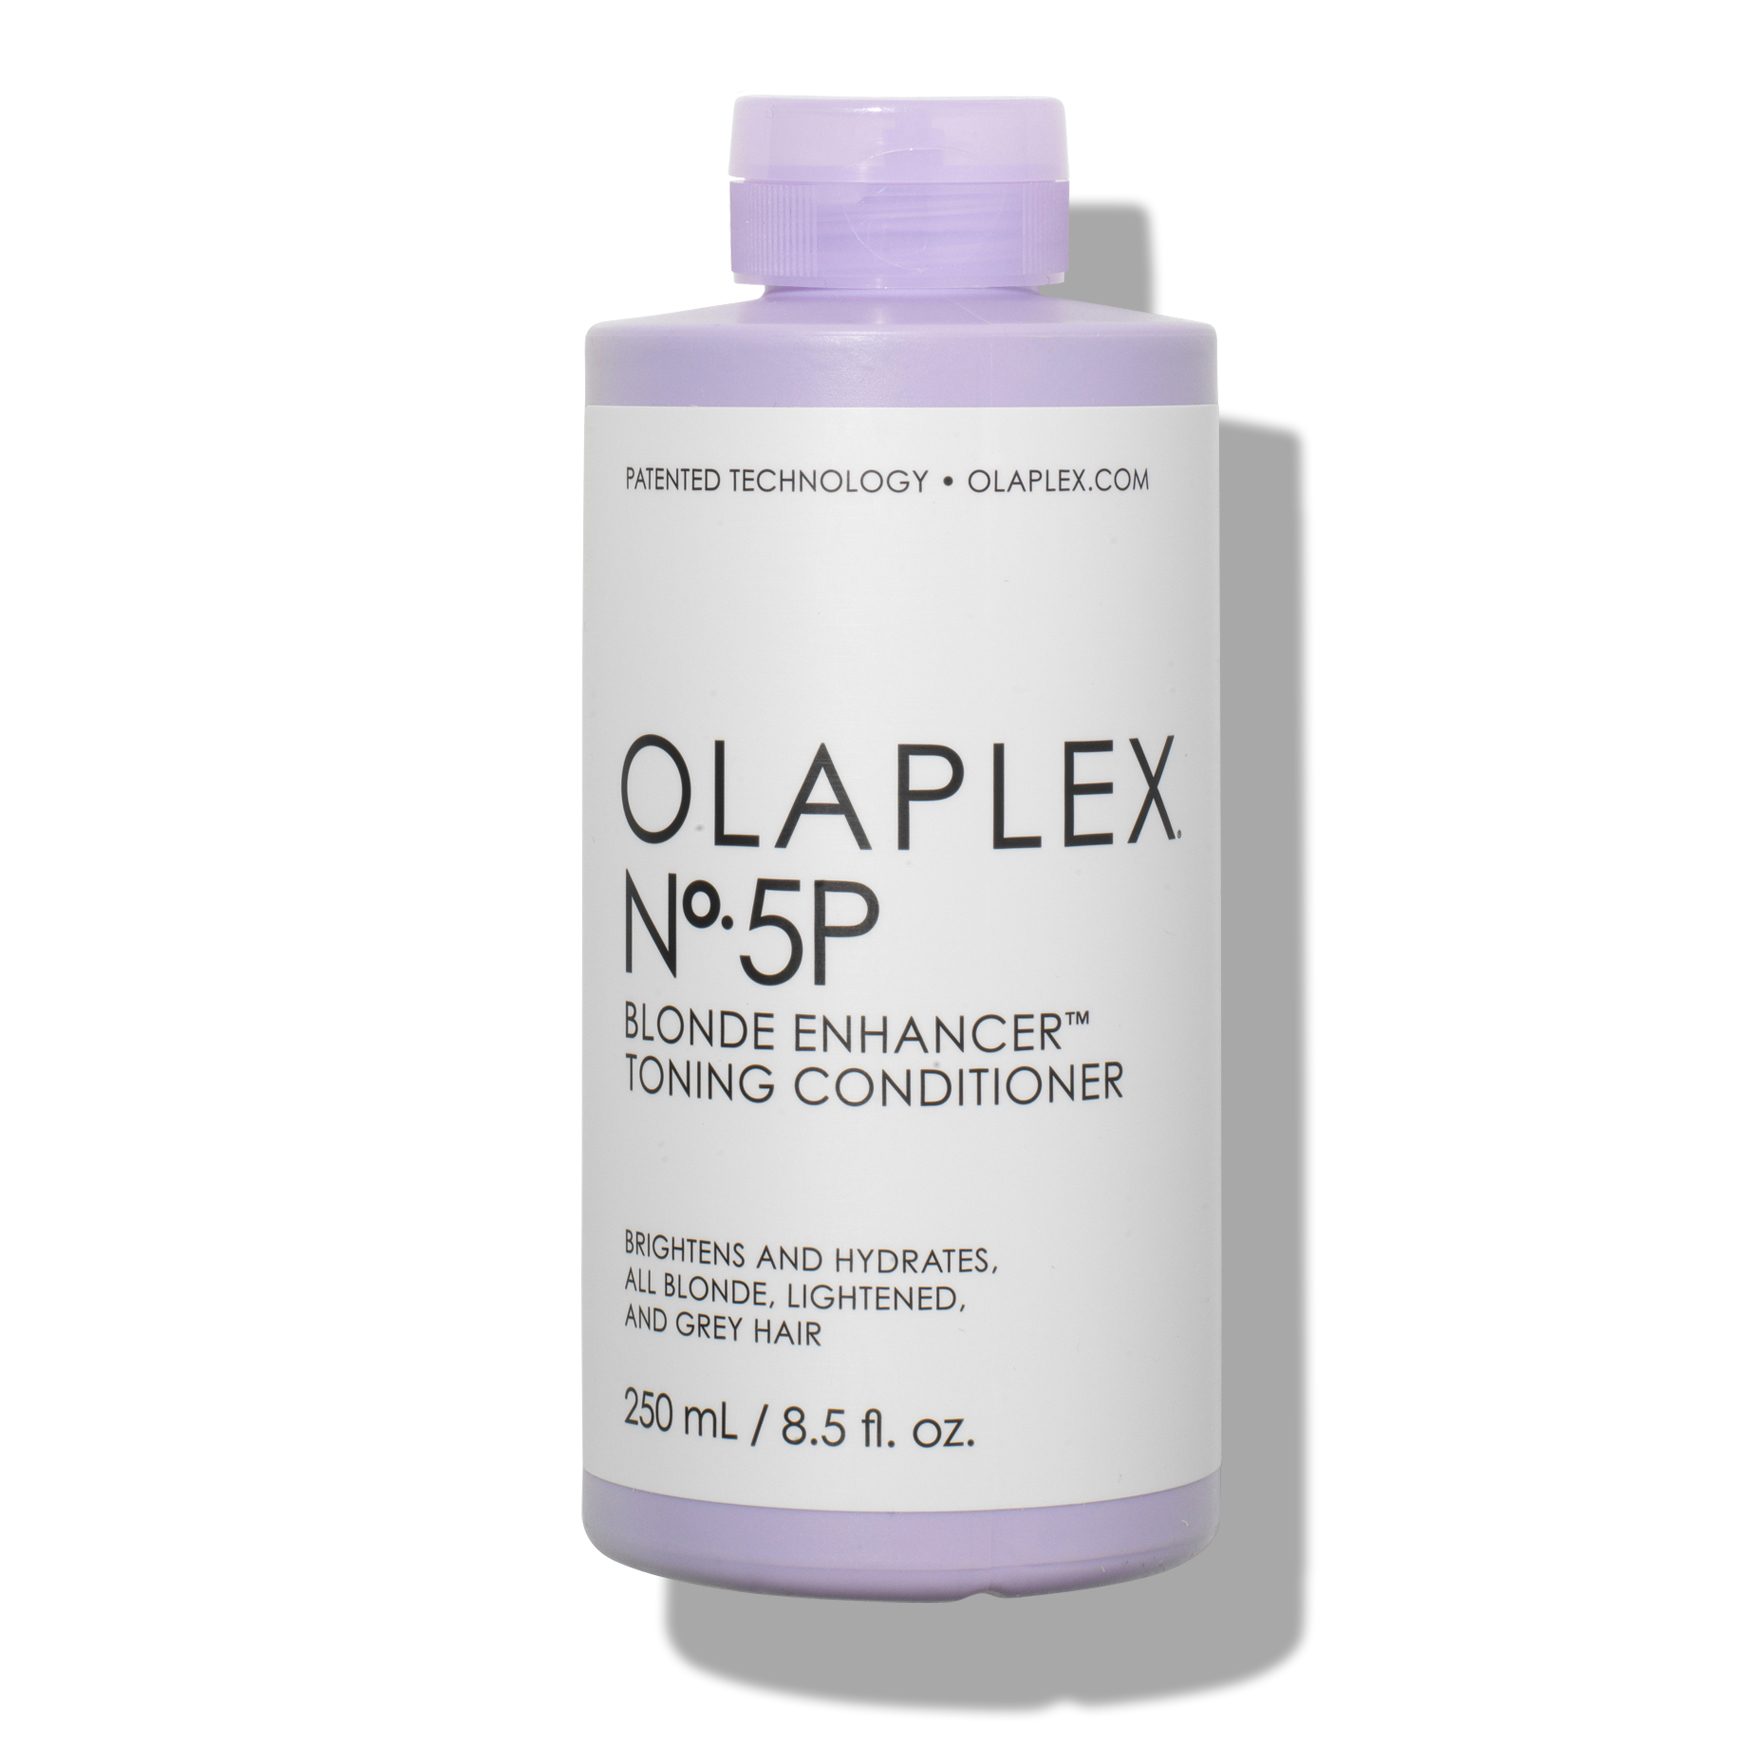 Olaplex 5P Blonde Enhancer Toning Conditioner